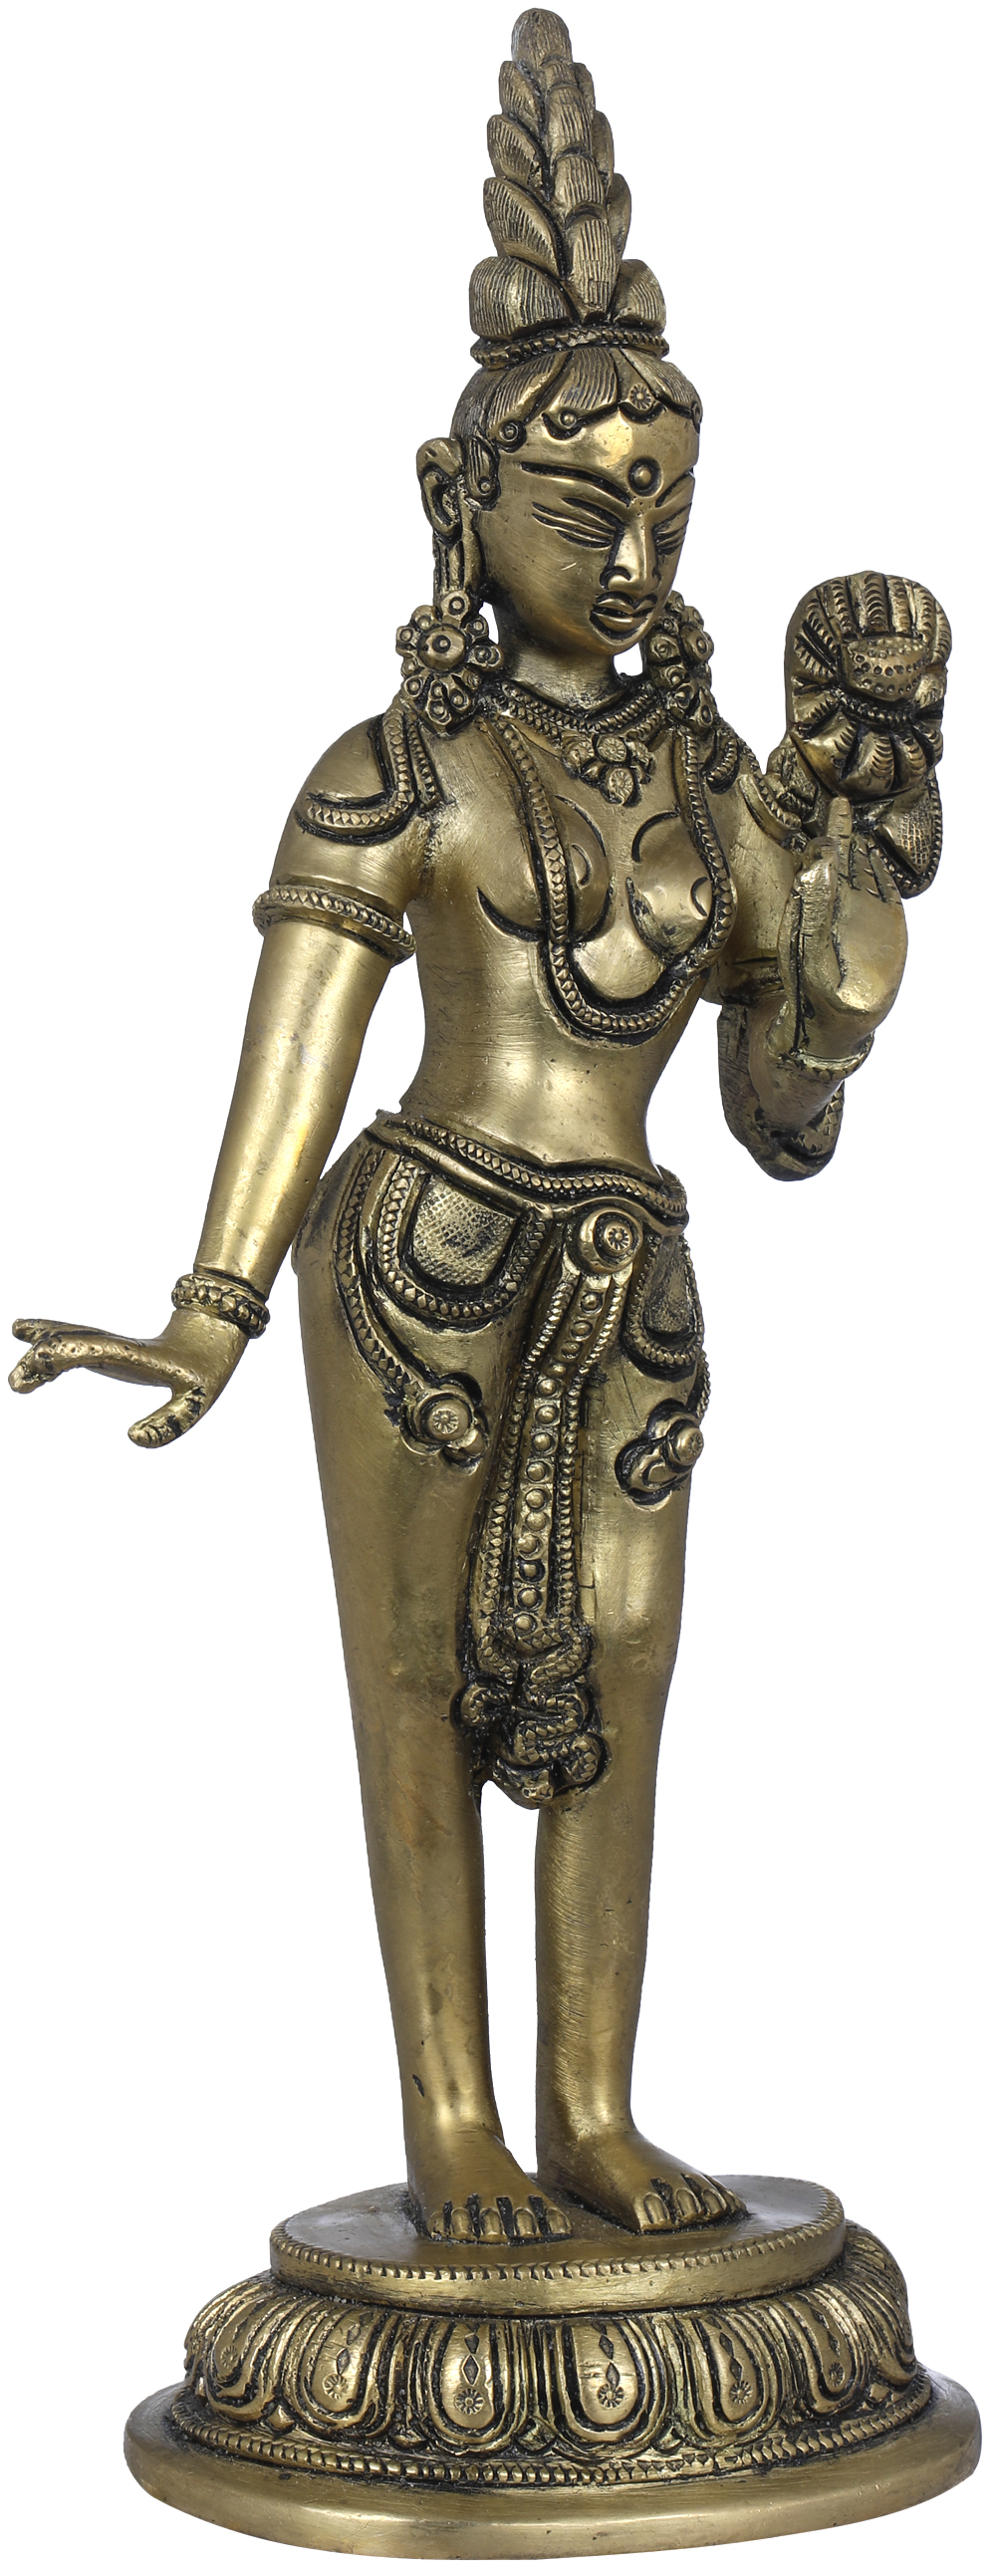 Details about   Brass Goddess Tara Standing on Beautiful Pedestal for Home Decor 